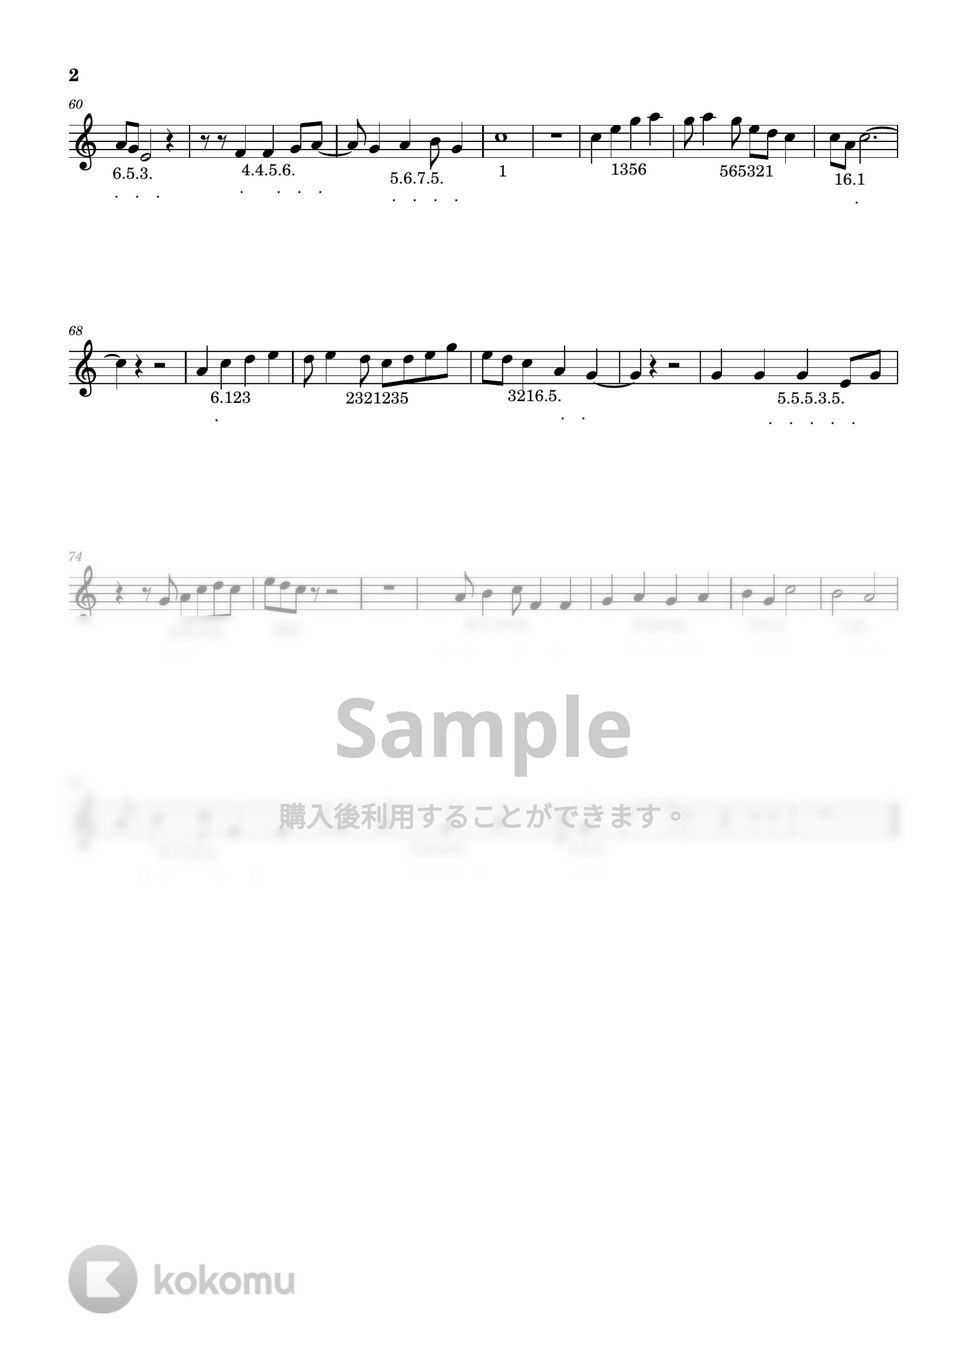 荒井由実 - ルージュの伝言 (15音Cメジャー「タングドラム用」の楽譜です。) by 中野心乃華